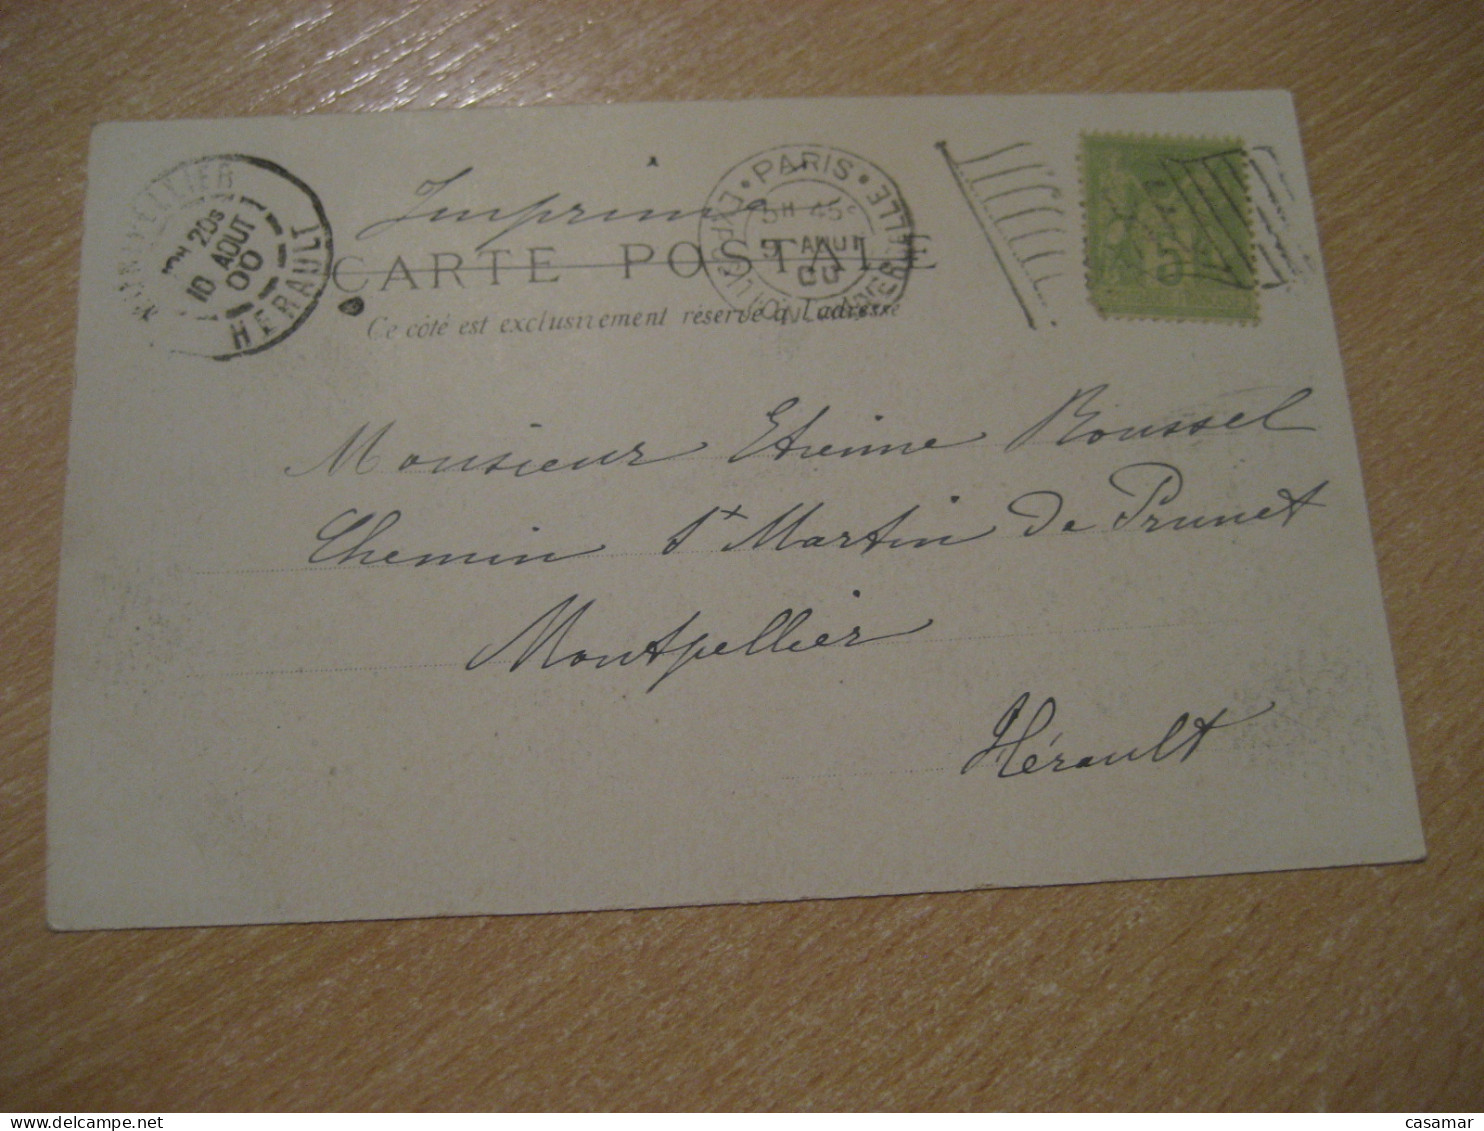 PARIS 1900 Universal Exposition Cancel To Montpellier Les Palais Etrangeres Postcard FRANCE Exposition Universelle - 1900 – Pariis (France)